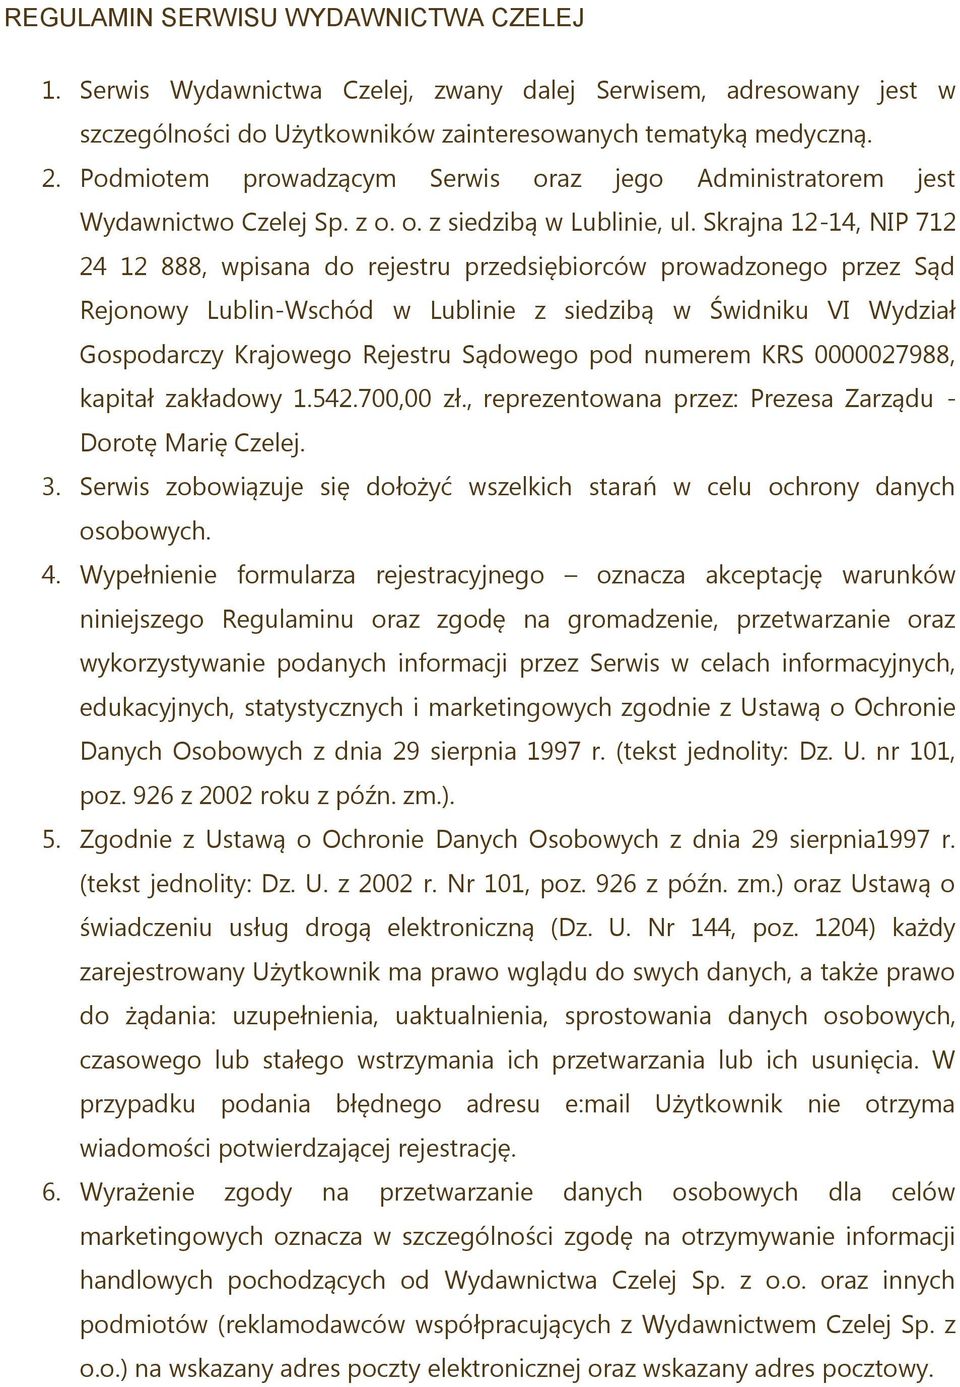 Skrajna 12-14, NIP 712 24 12 888, wpisana do rejestru przedsiębiorców prowadzonego przez Sąd Rejonowy Lublin-Wschód w Lublinie z siedzibą w Świdniku VI Wydział Gospodarczy Krajowego Rejestru Sądowego